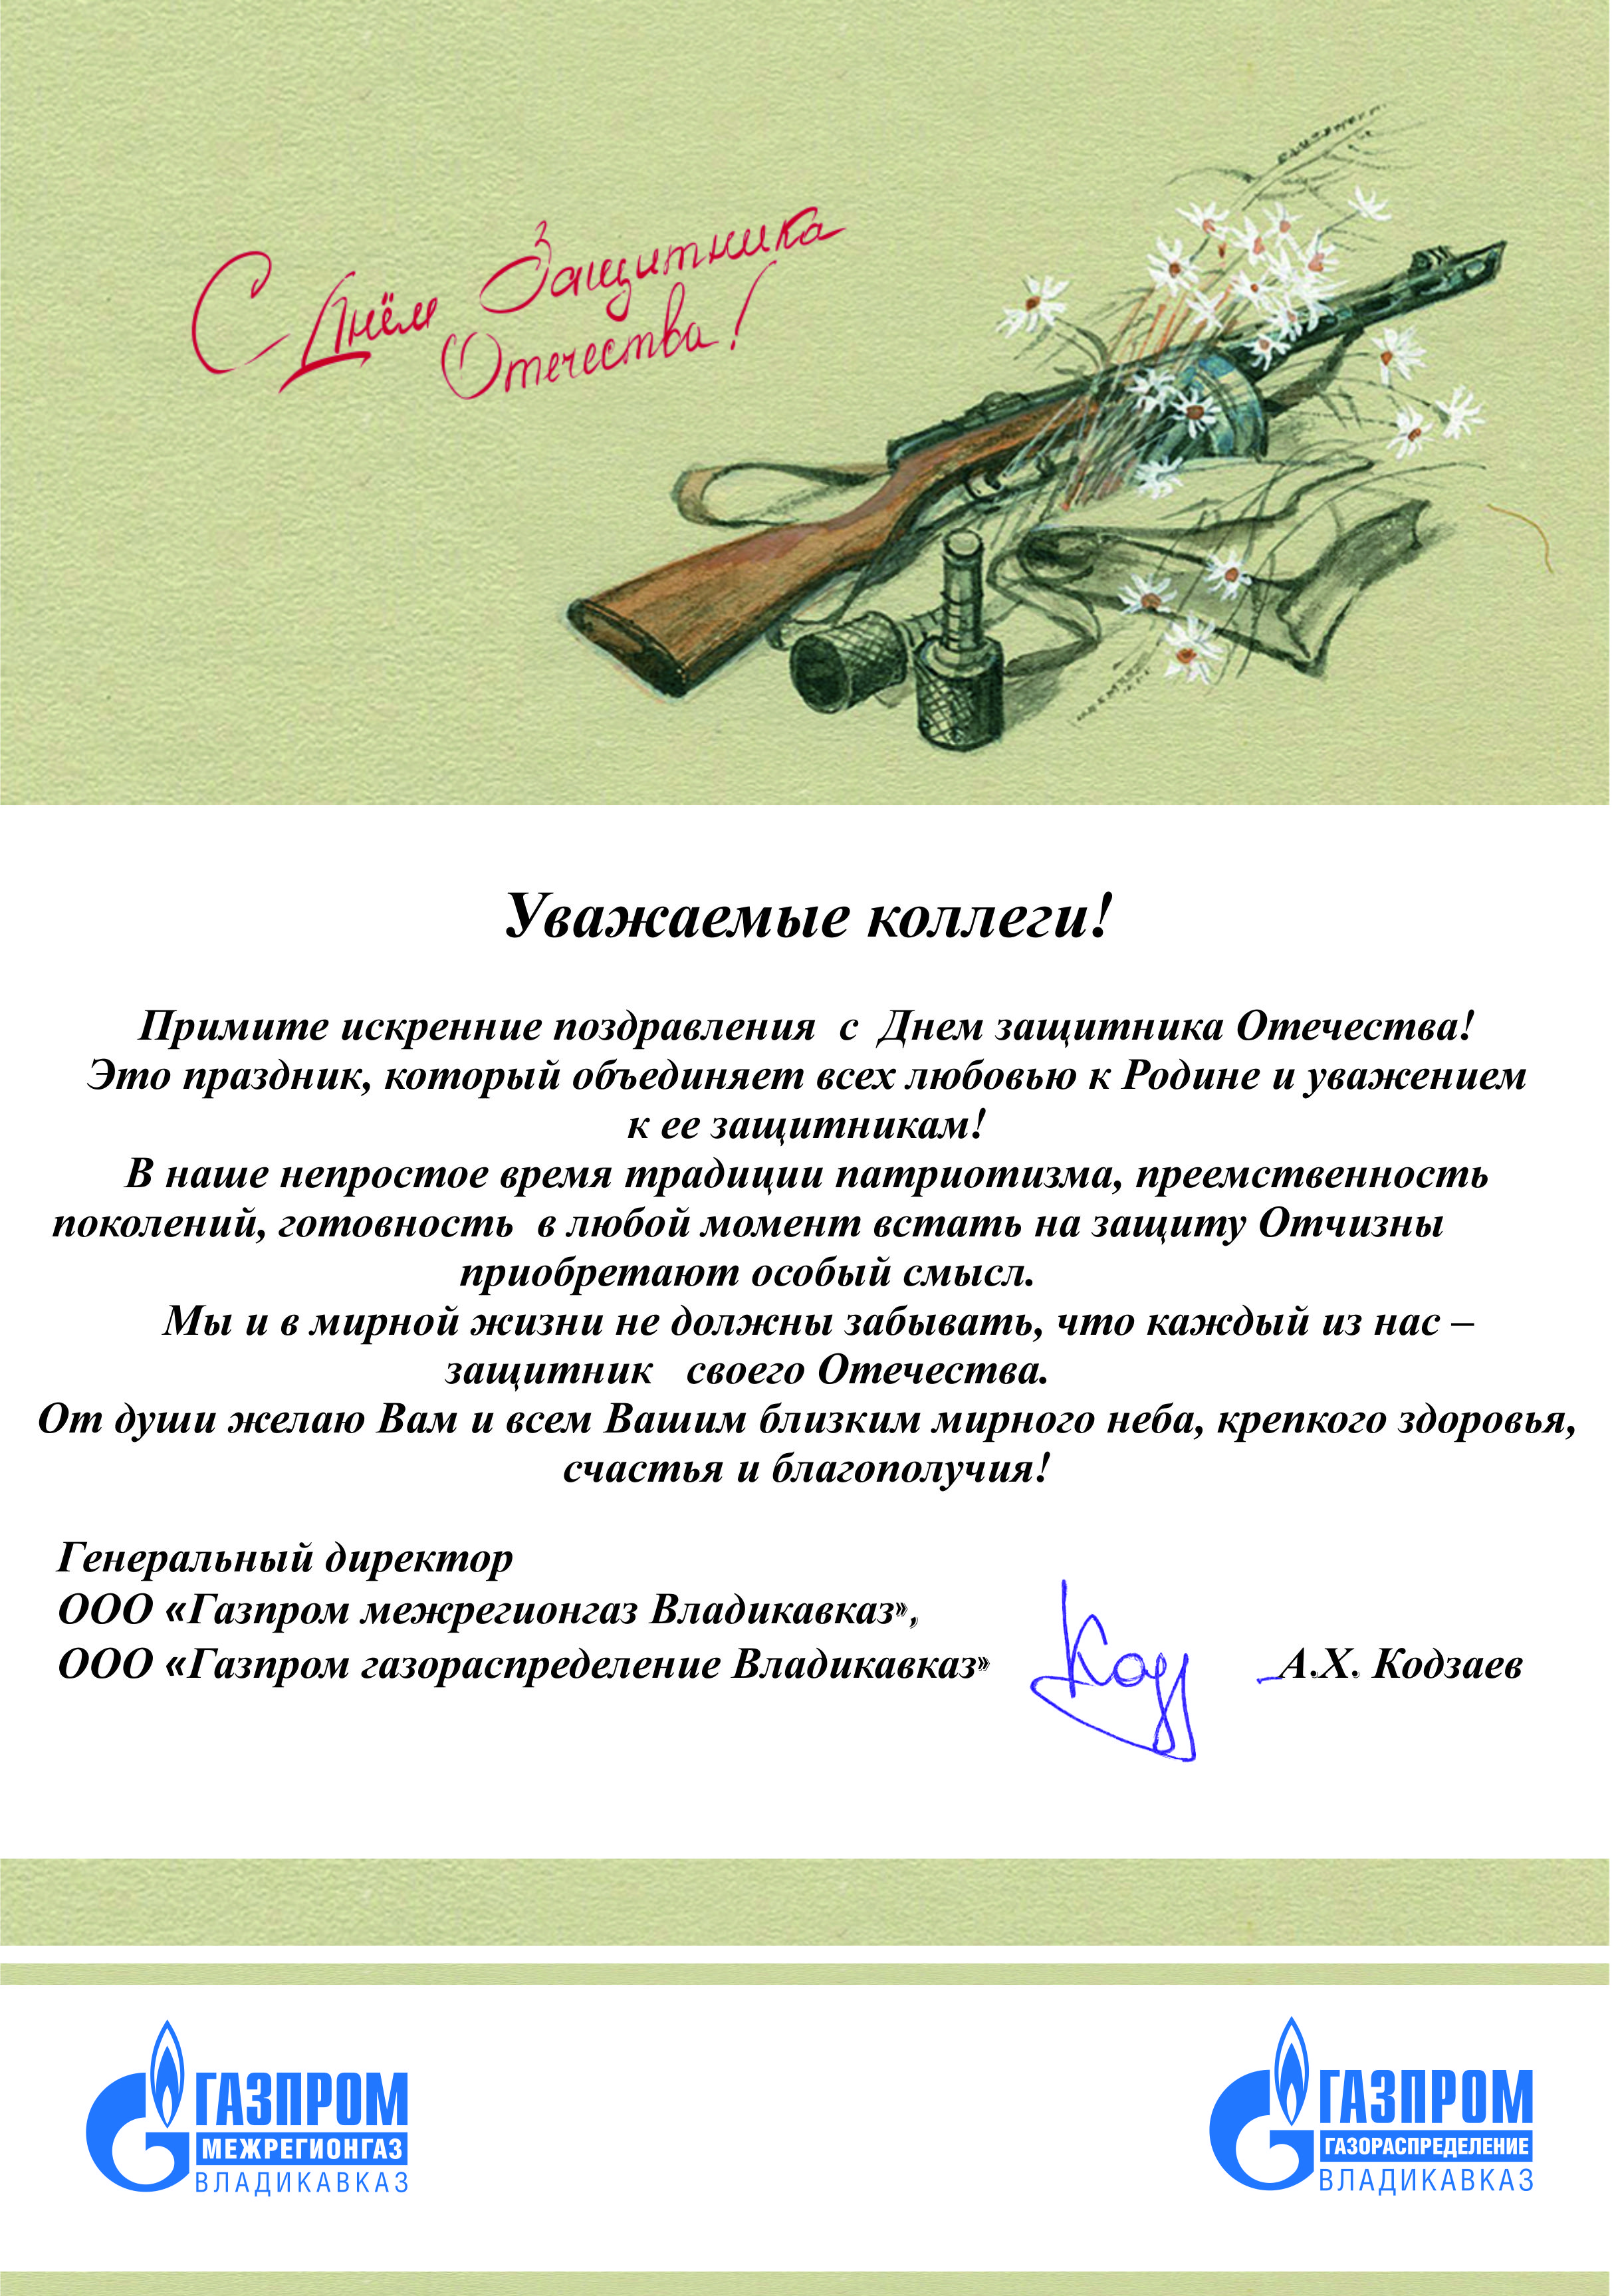 Поздравление коллектива с 23 февраля от руководителя. Кодзаев руководитель межрегионгаз г.Владикавказ.